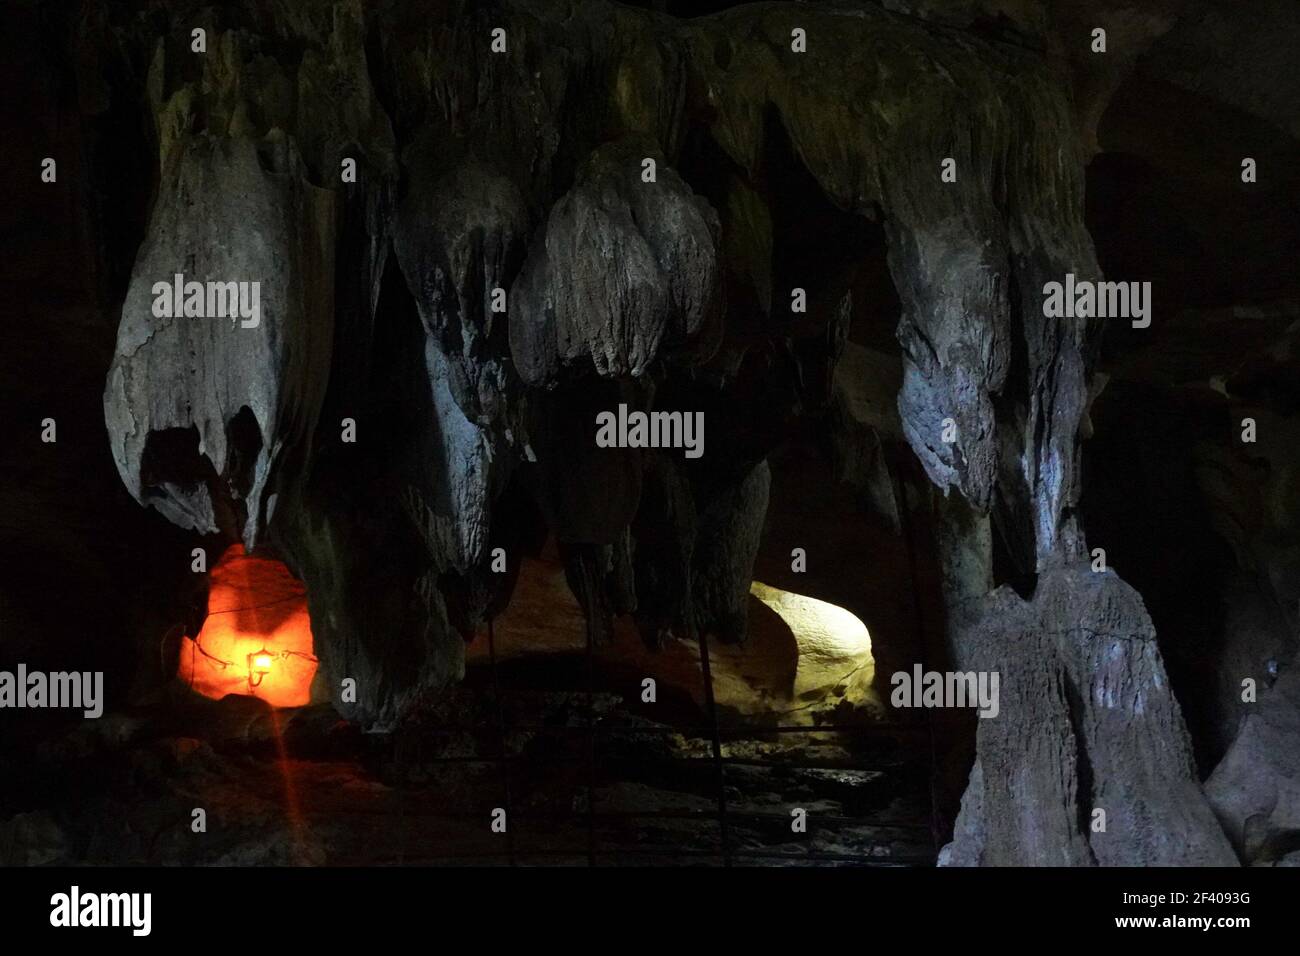 Goa Putri ist eine Höhle in Padang Bindu Village, Semindang Aji District, Ogan Komering Ulu Regency, Baturaja, Süd-Sumatra. Diese Höhle ist etwa einen Kilometer entfernt, die Baturaja und Muara Enim verbindet. Goa Putri ist in der Lage, Schönheit und historischen Wert zu schaffen, die nicht verpasst werden sollte. Der Legende nach lebte vor langer Zeit eine Tochter namens Dayang Merindu, die Konkubine von Prabu Amir Rasyid, dem Herrscher des Oganreiches. (Foto von Muhammad Shahab/Pacific Press) Stockfoto